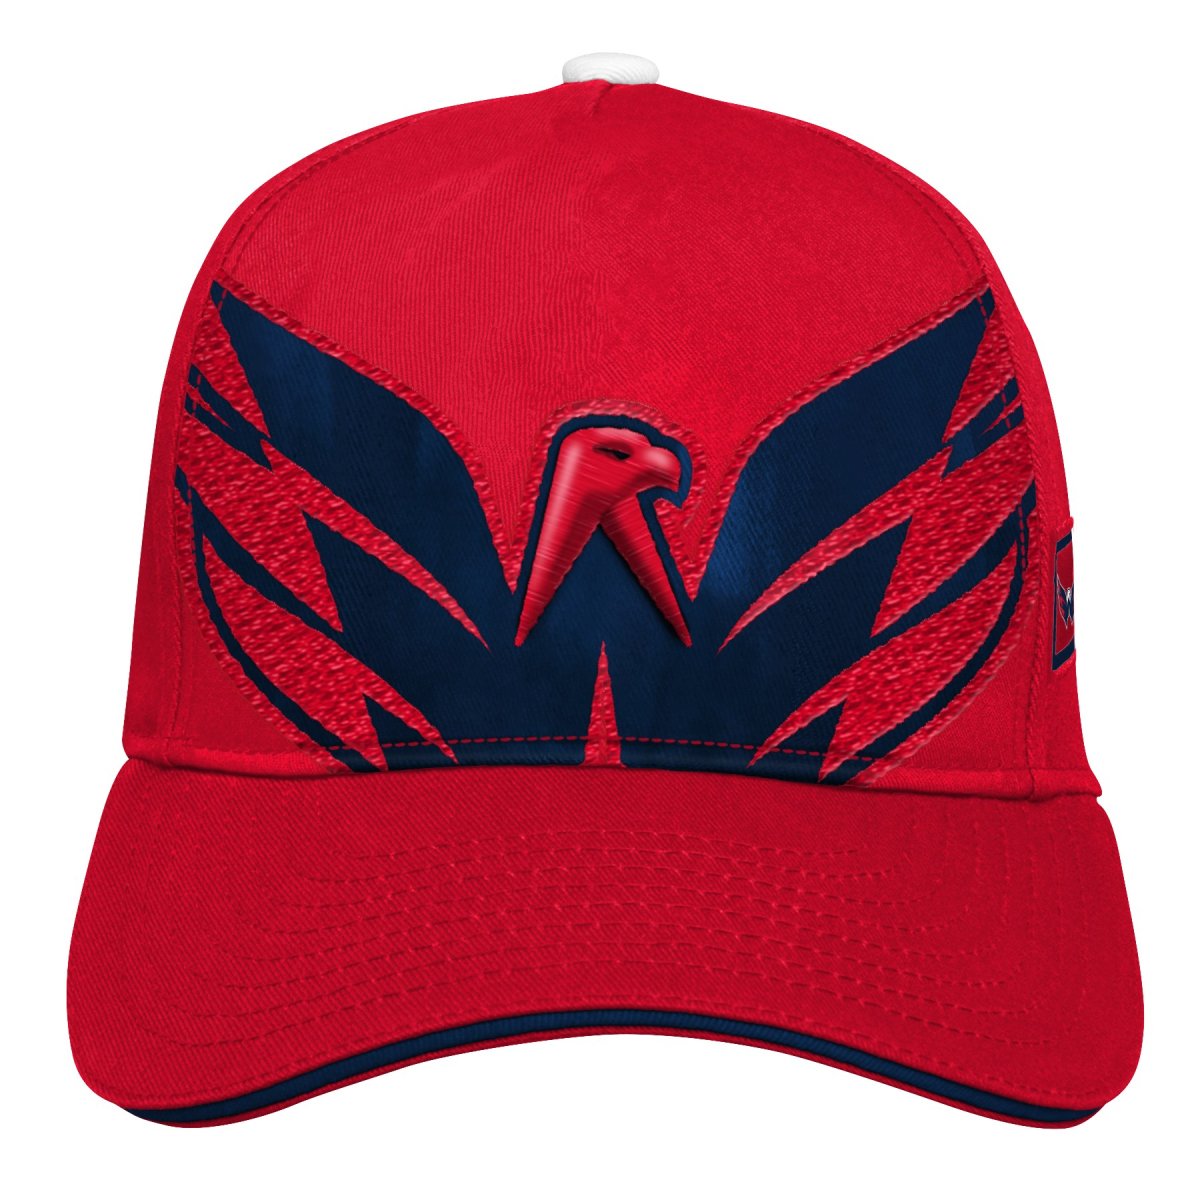 Washington Capitals detská čiapka baseballová šiltovka Big Face red